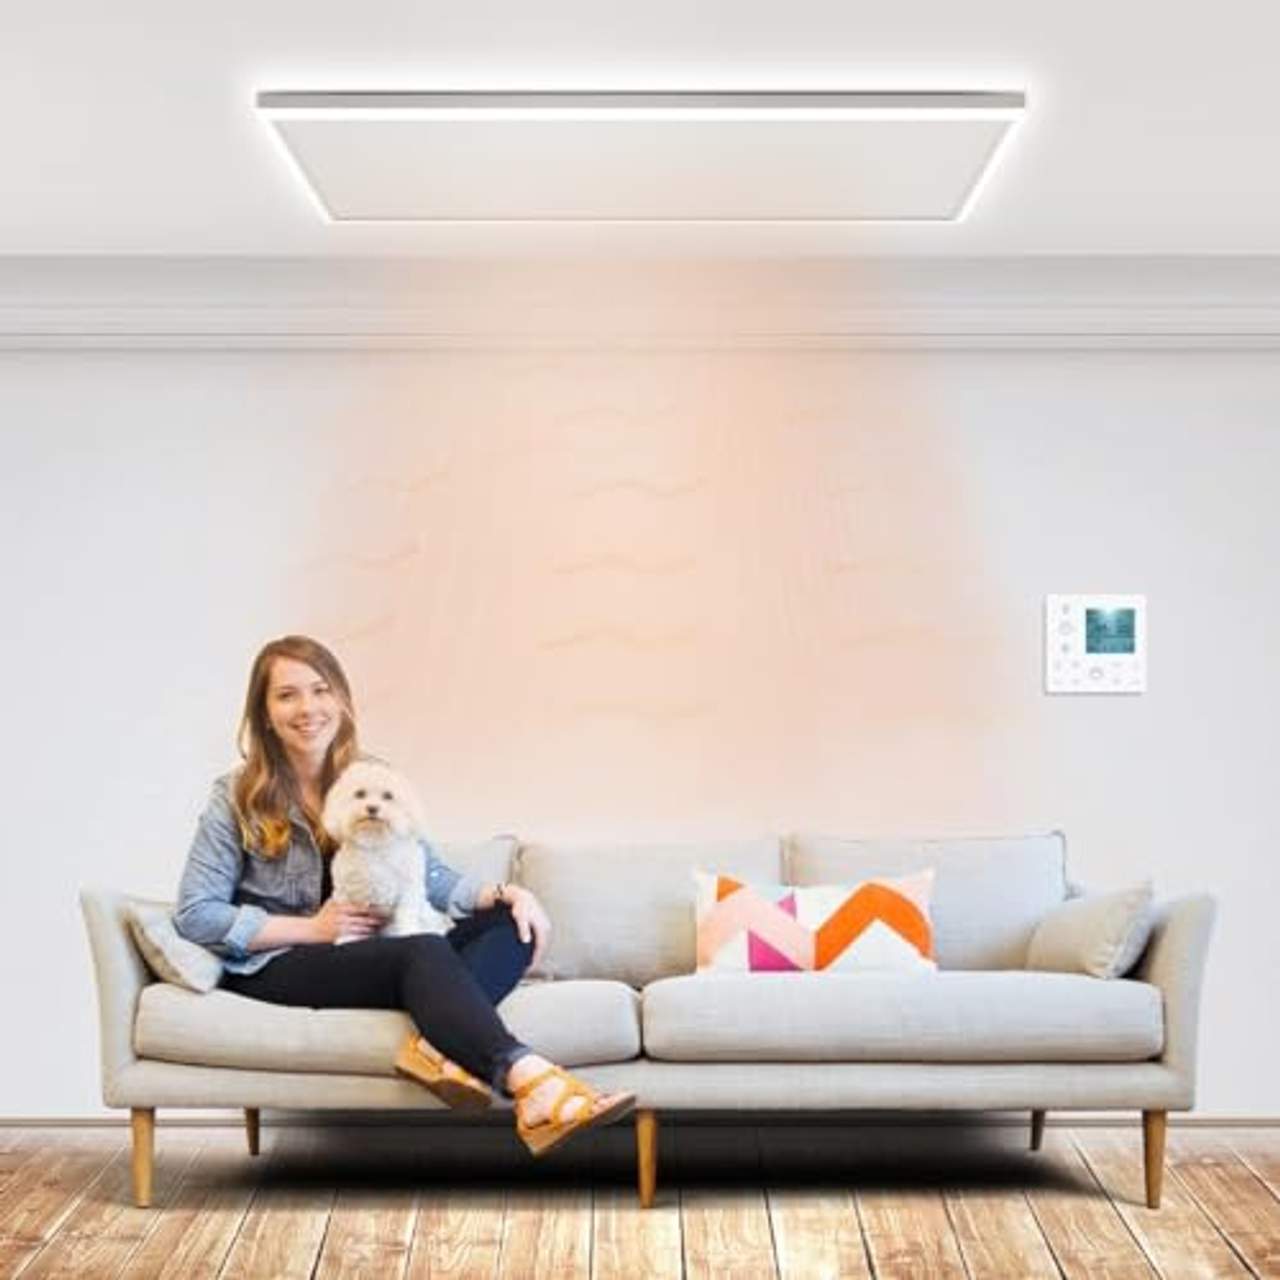 byecold Infrarotheizung mit Thermostat Deckenheizung 800W LED Beleuchtung Licht Kaltweiß